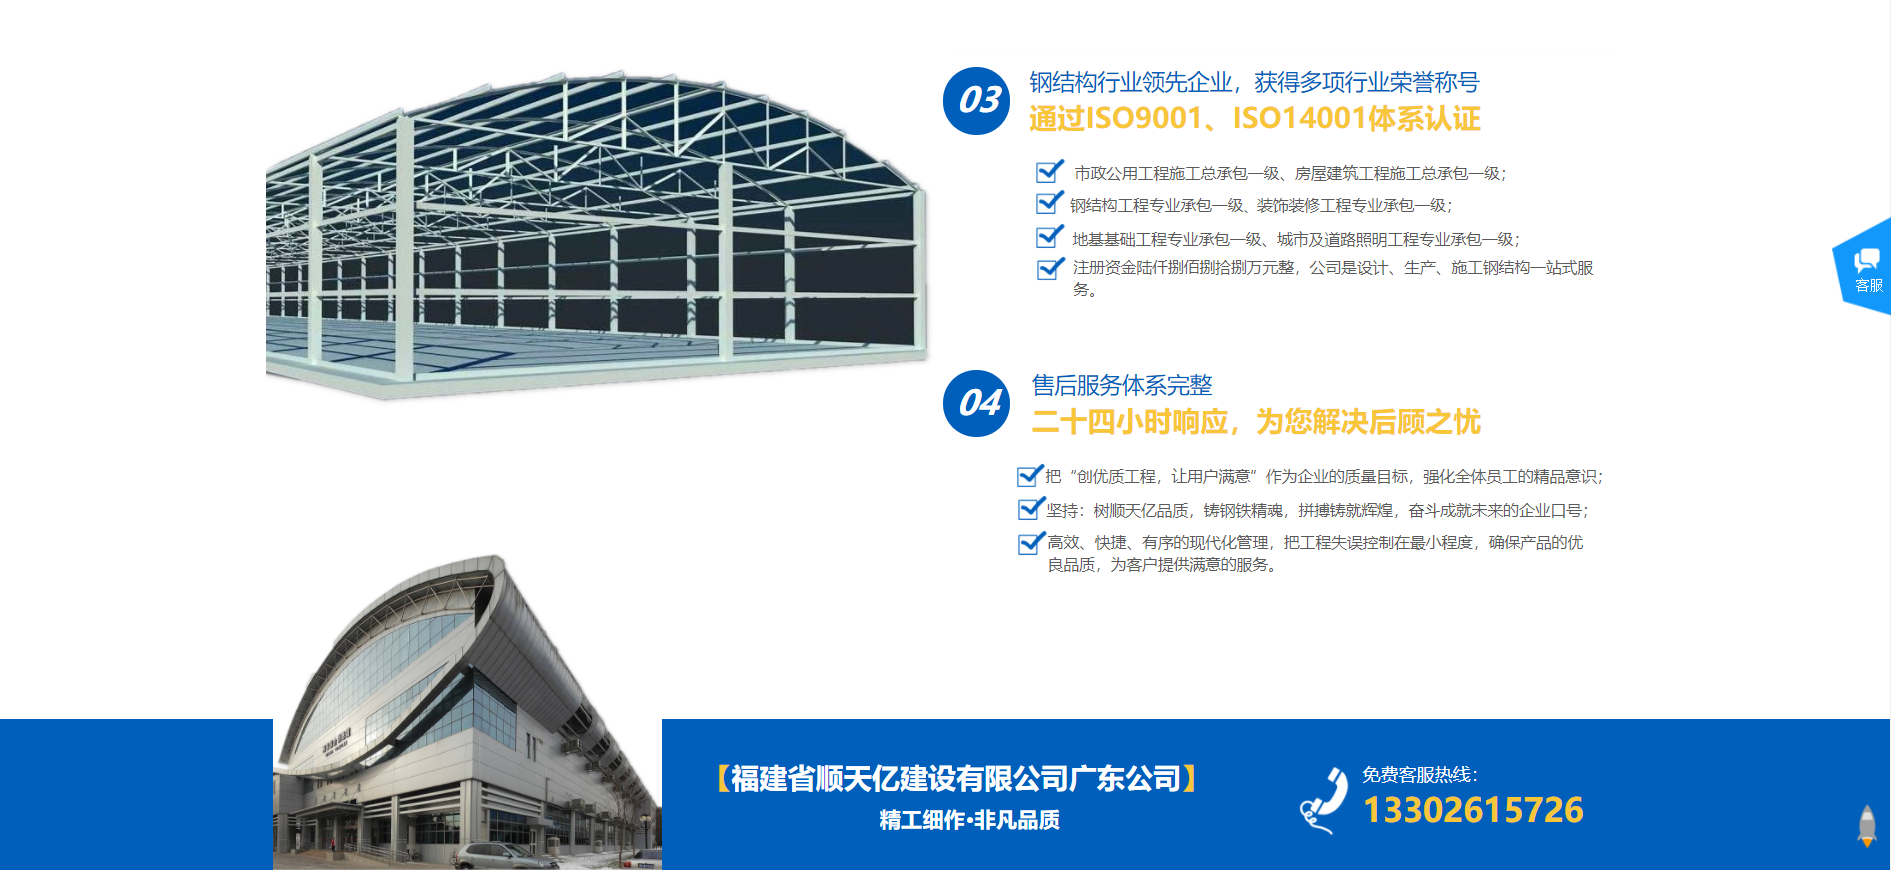 包含惠州广州网站建设排名推荐的词条